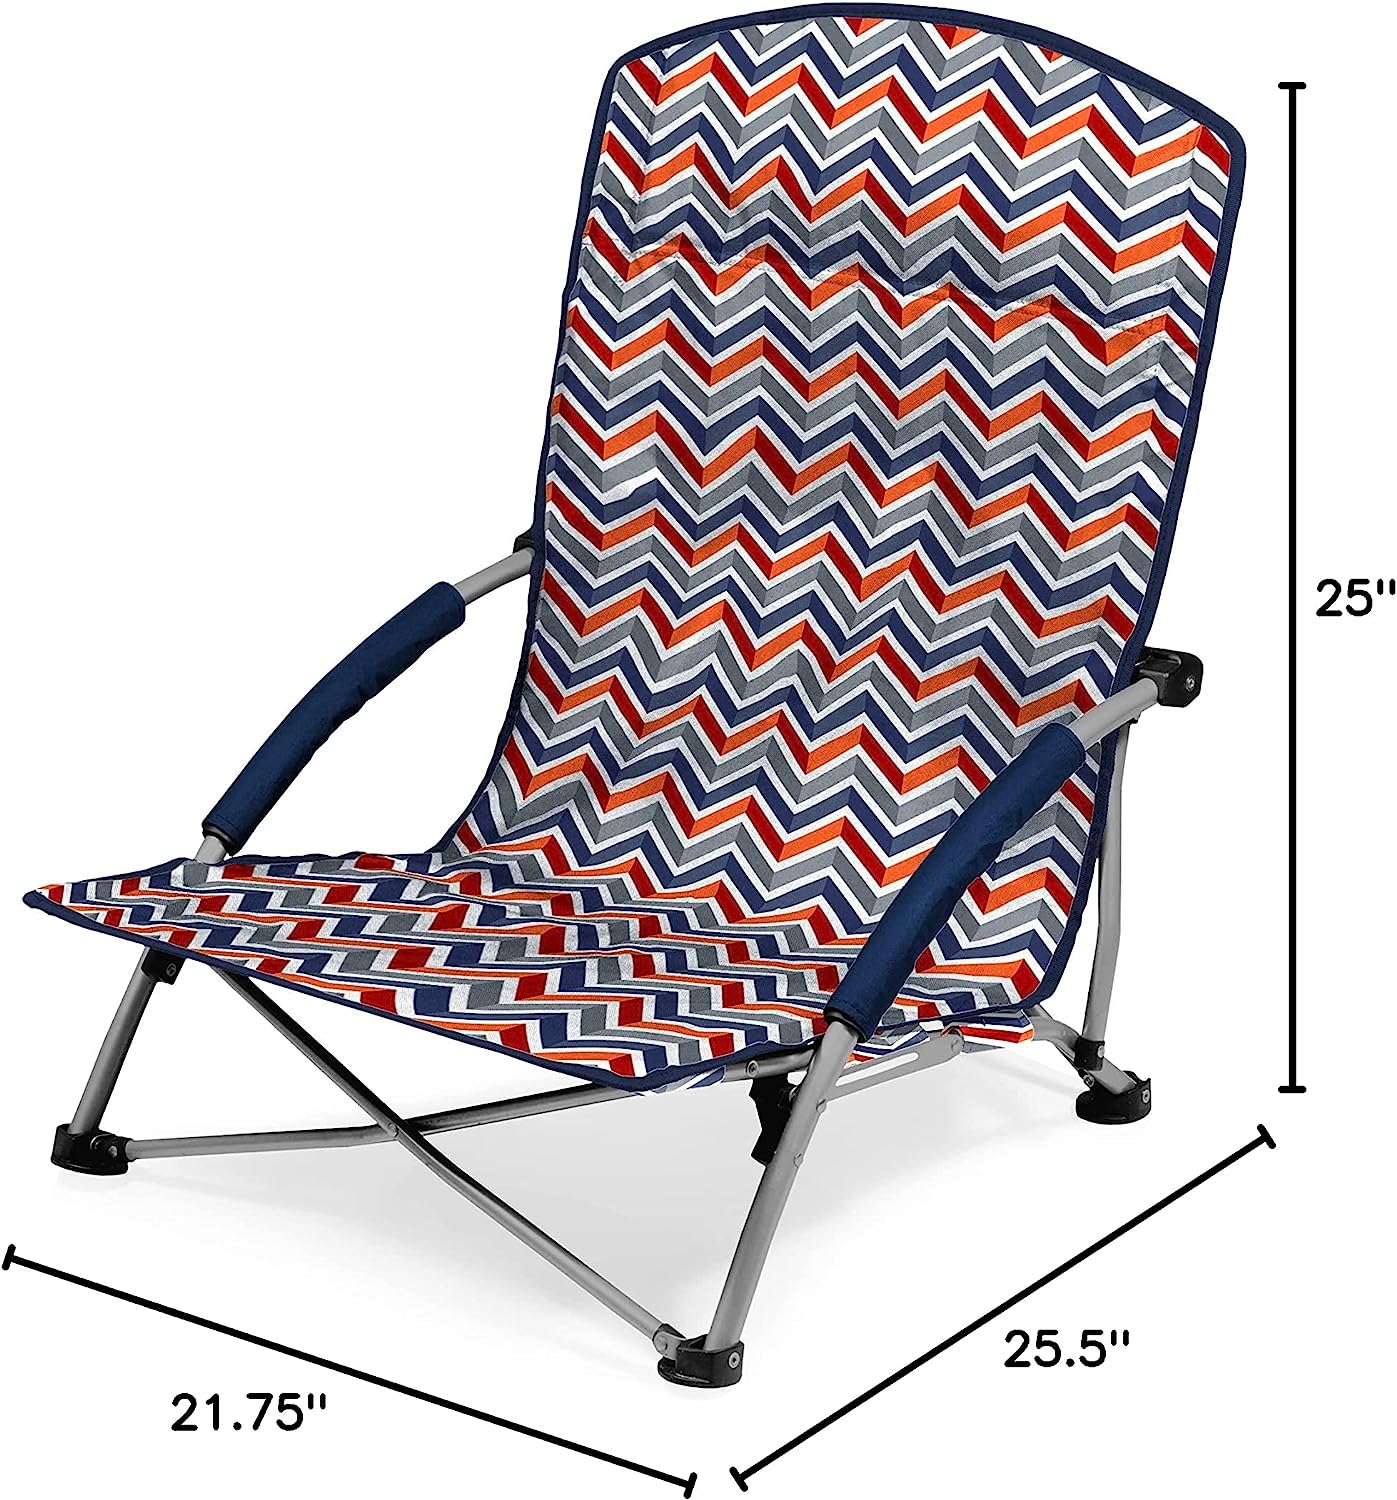 Portable Chair: Portable Folding Beach Chair